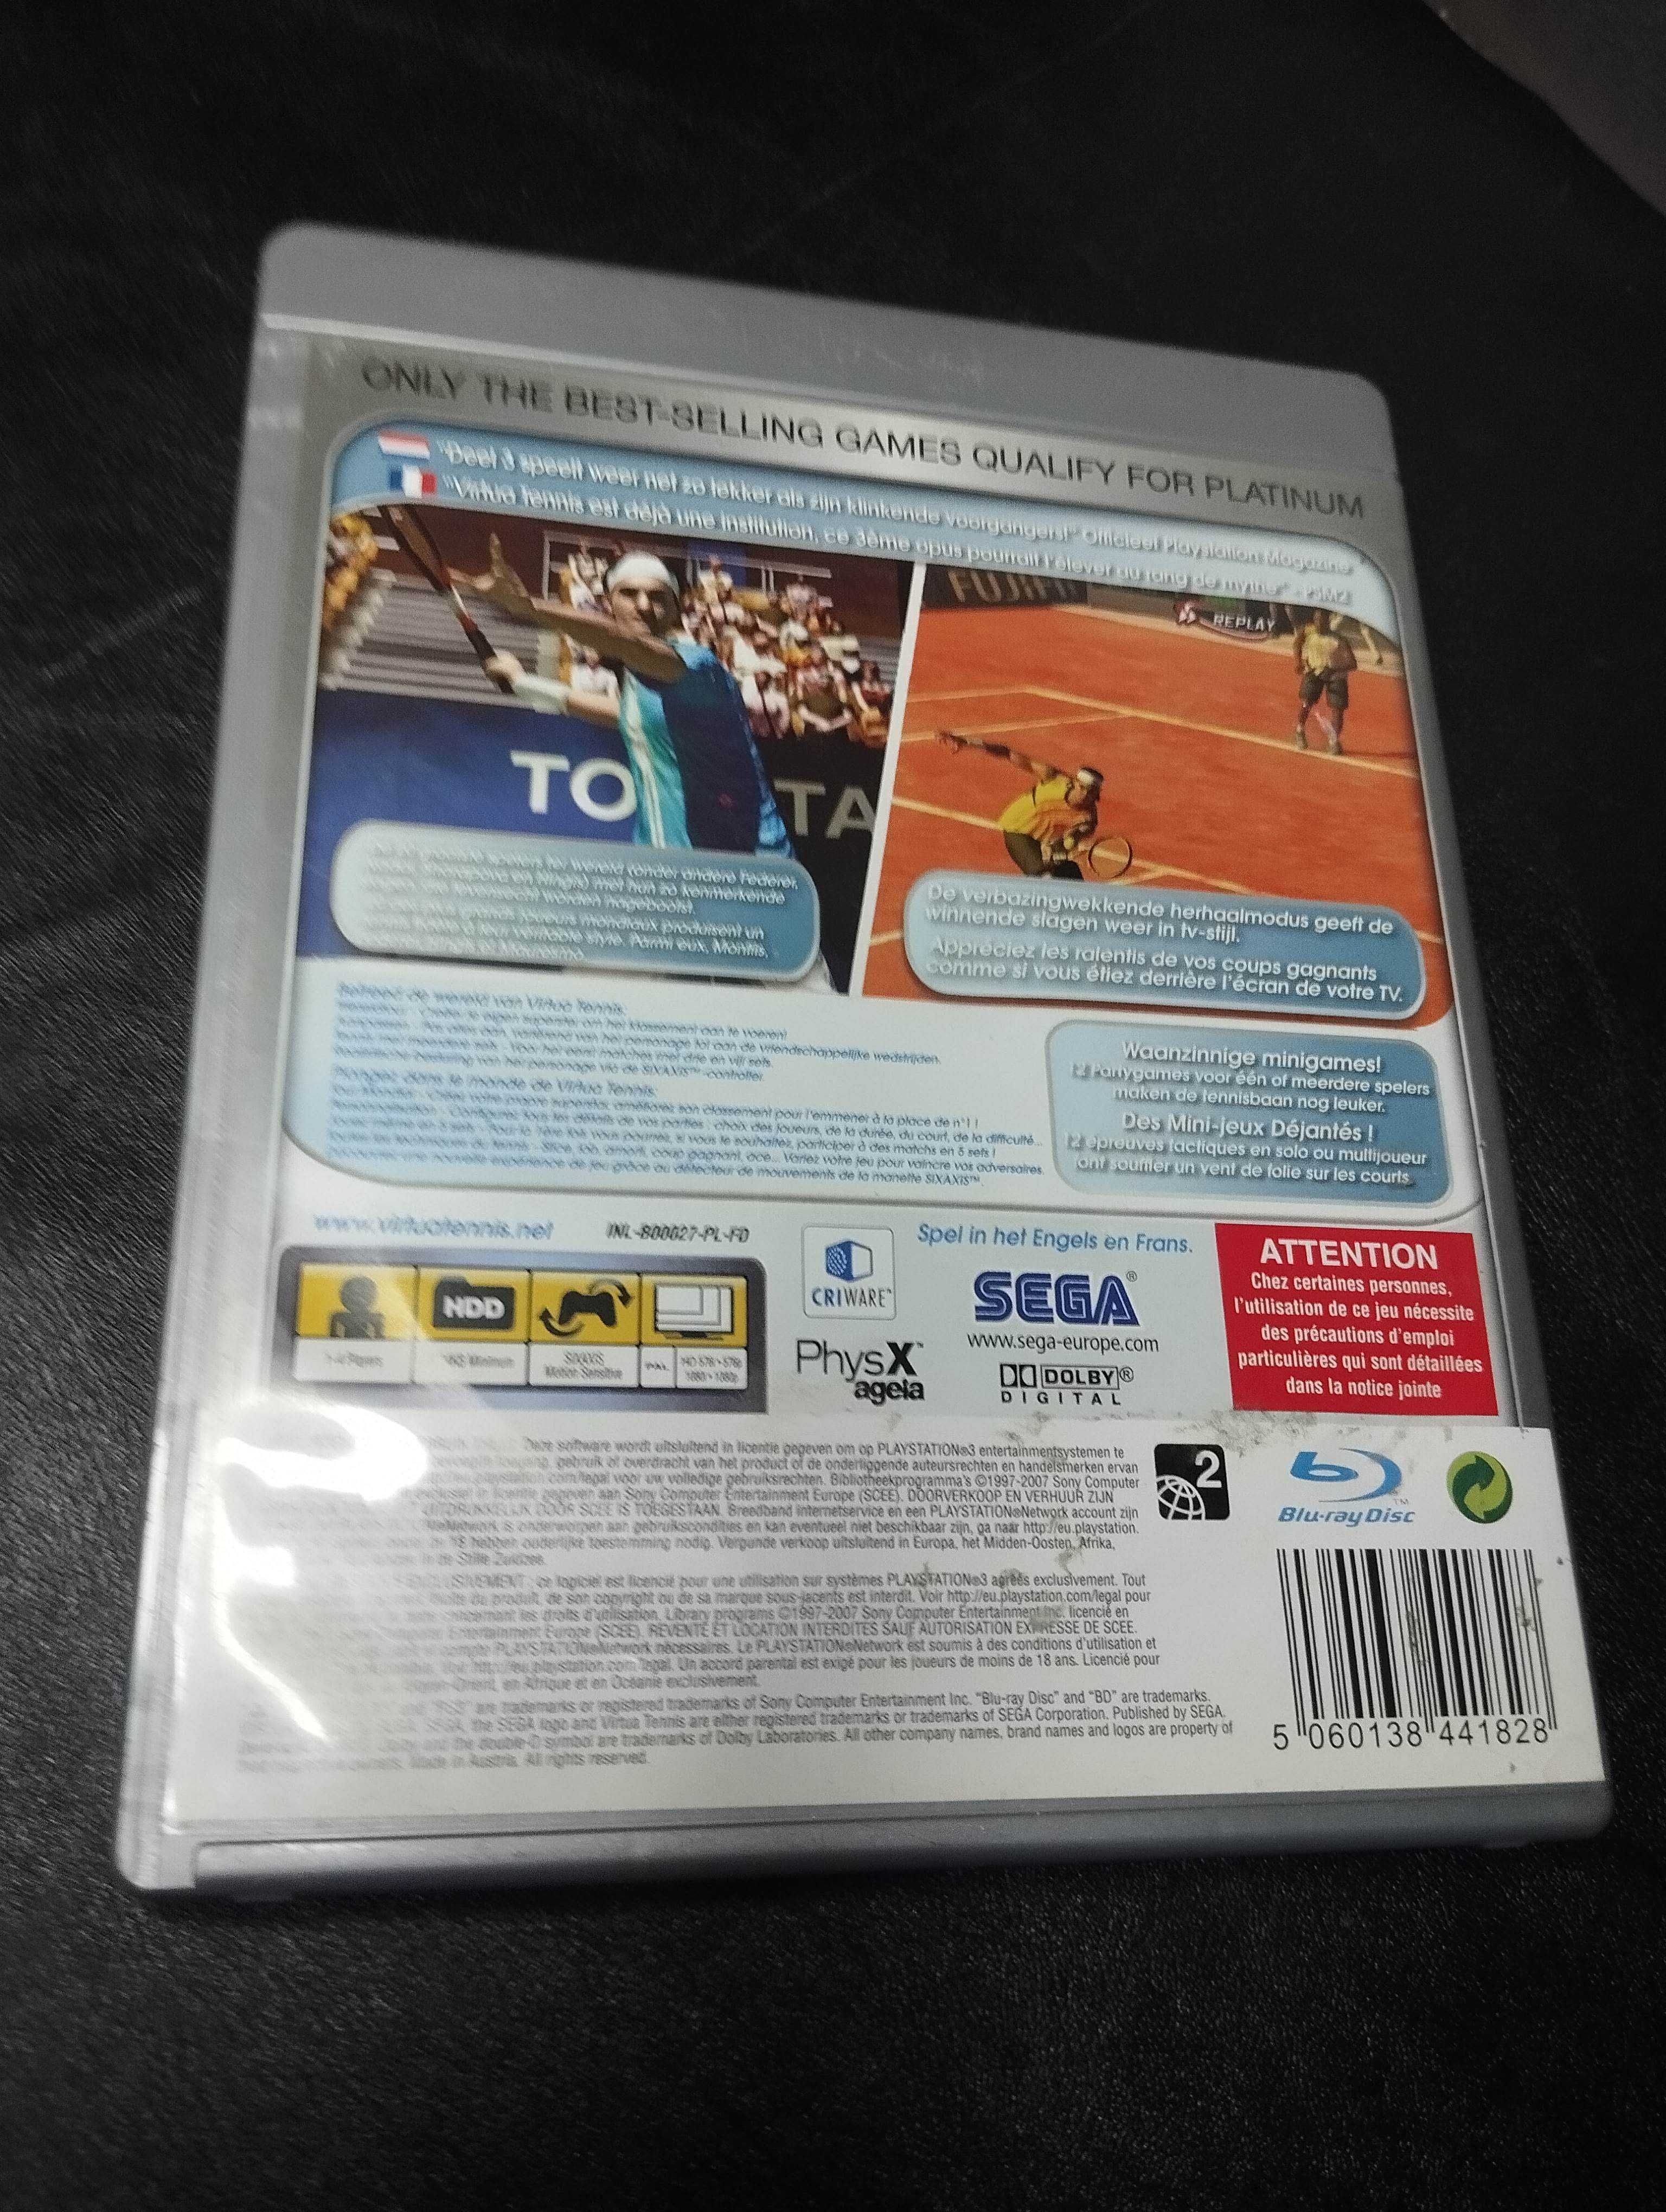 Virtua Tennis 3 - PS3 - duży wybór gier PlayStation